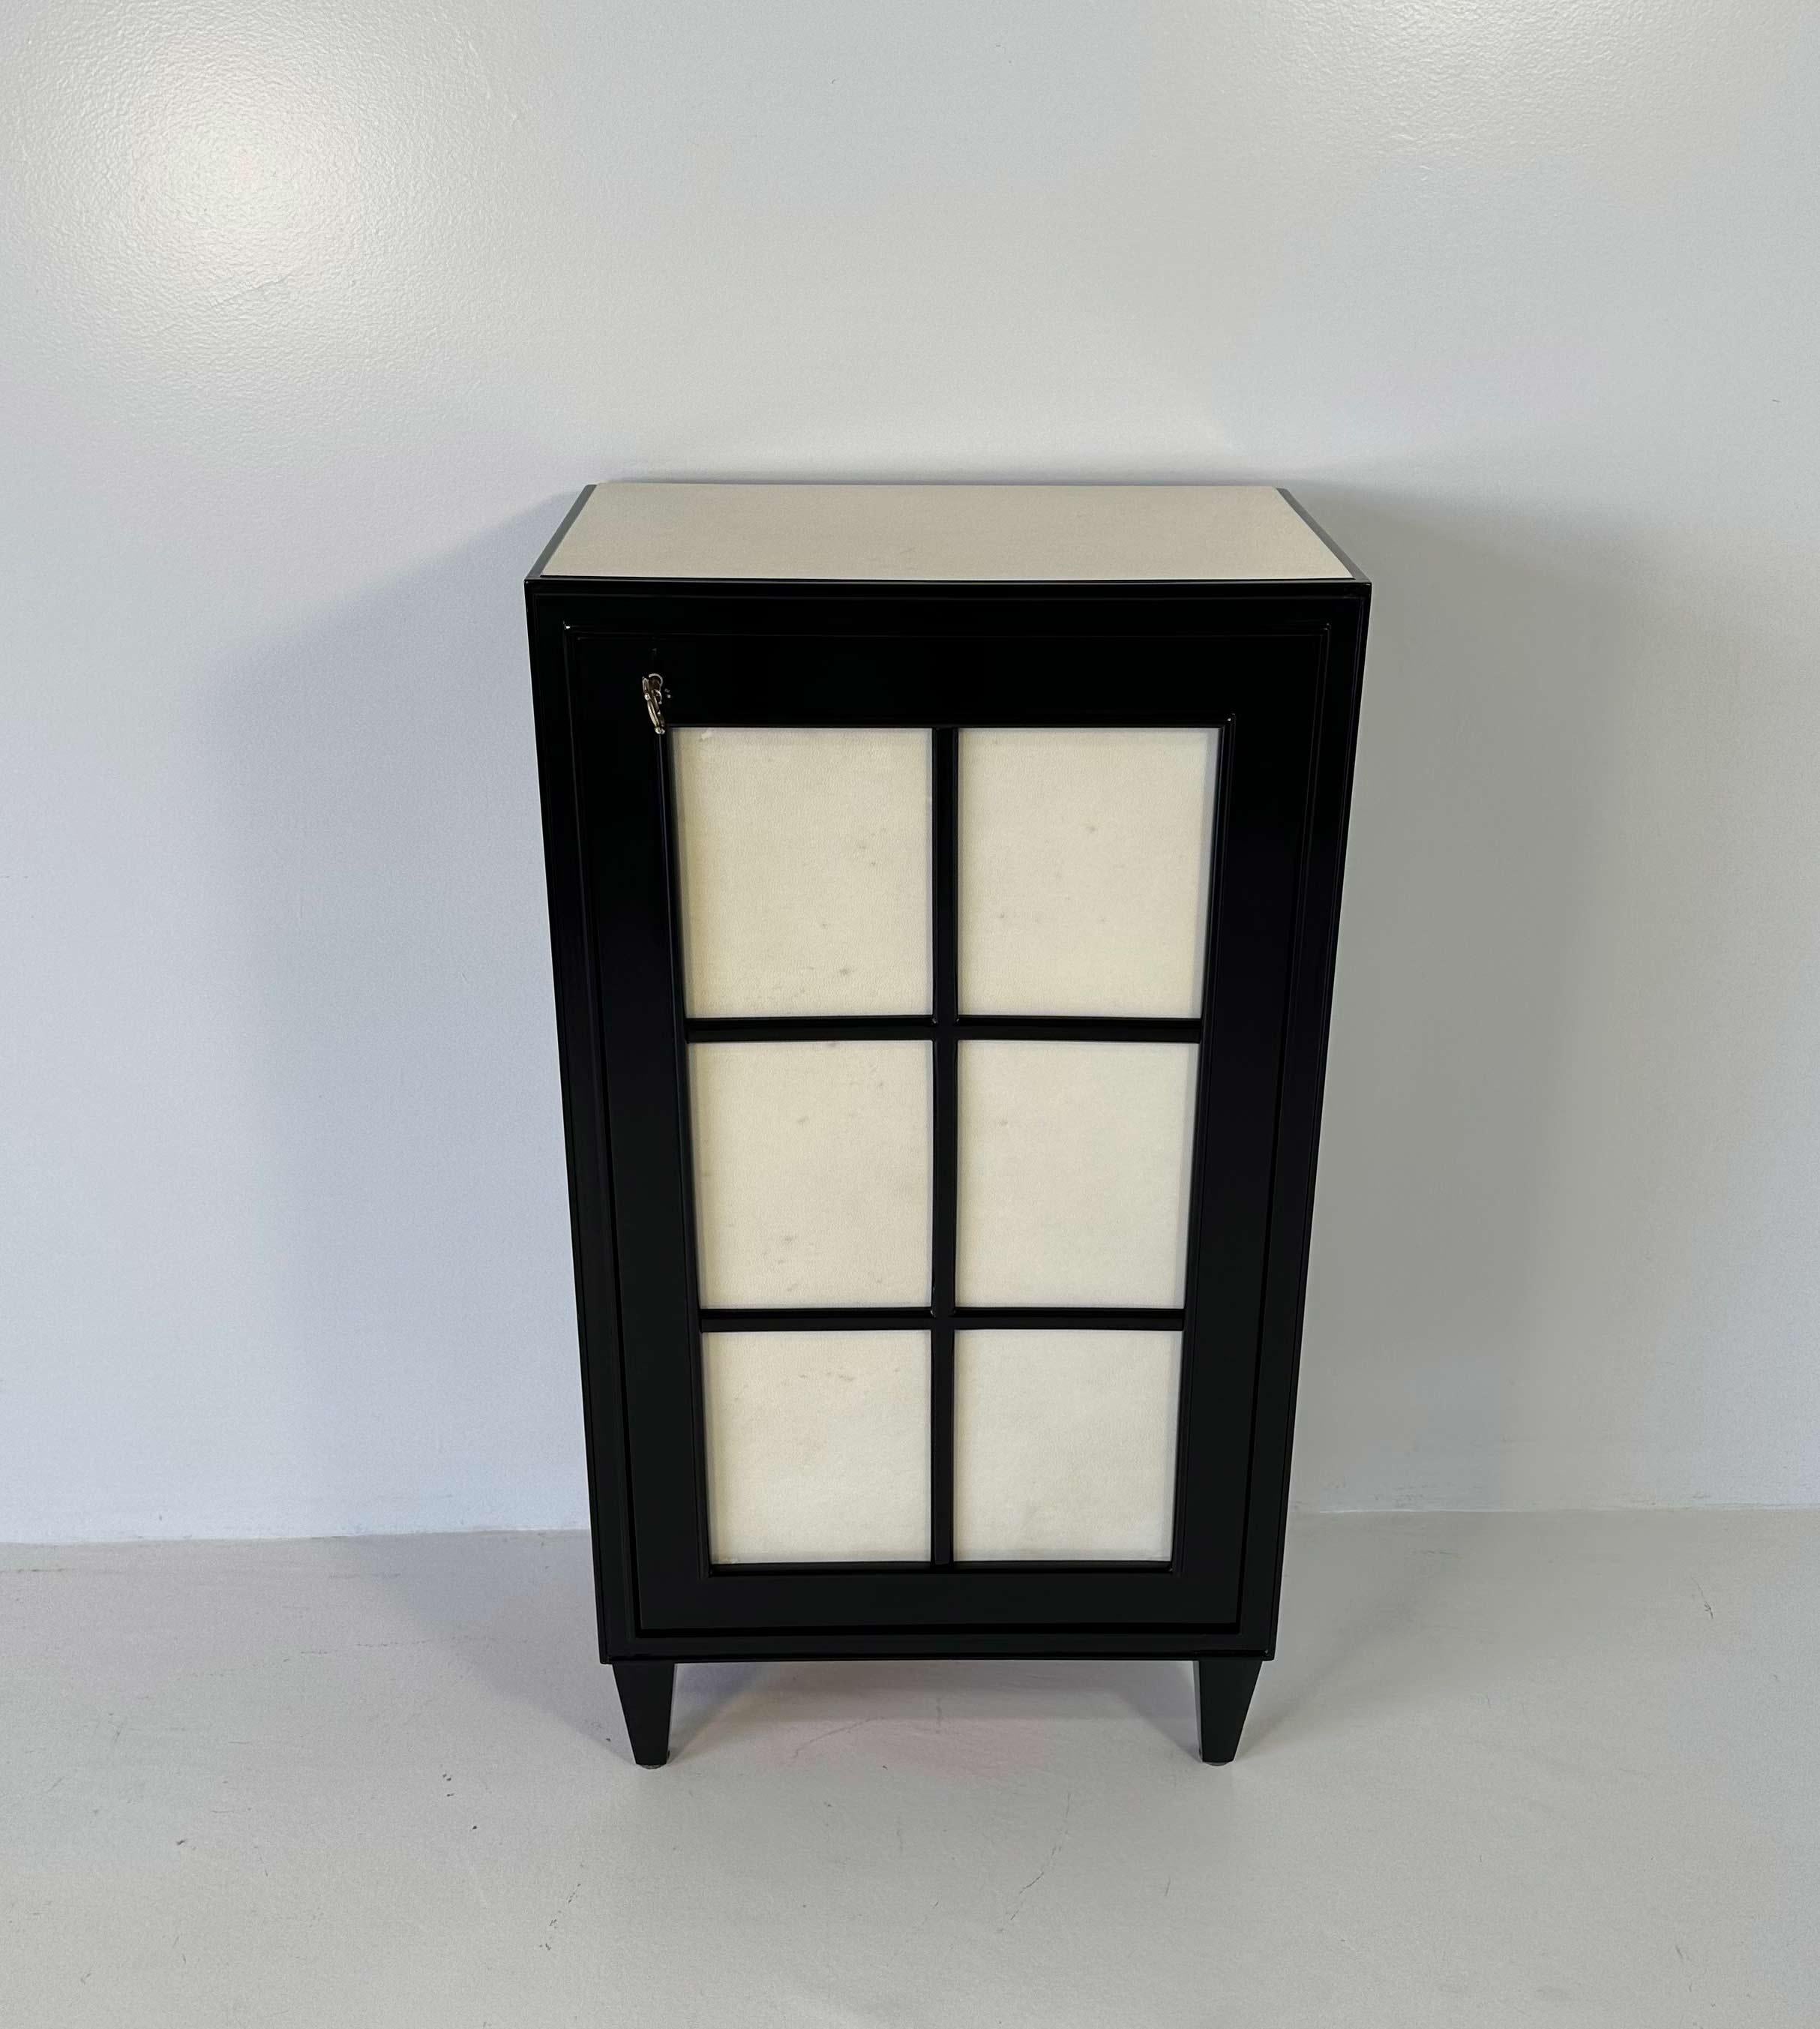 Ce petit meuble Art déco a été produit en Italie dans les années 1940. 
Il est entièrement laqué noir, tandis que la porte et le dessus sont en parchemin. Les clés et le trou de serrure sont en laiton. 
Entièrement restauré.